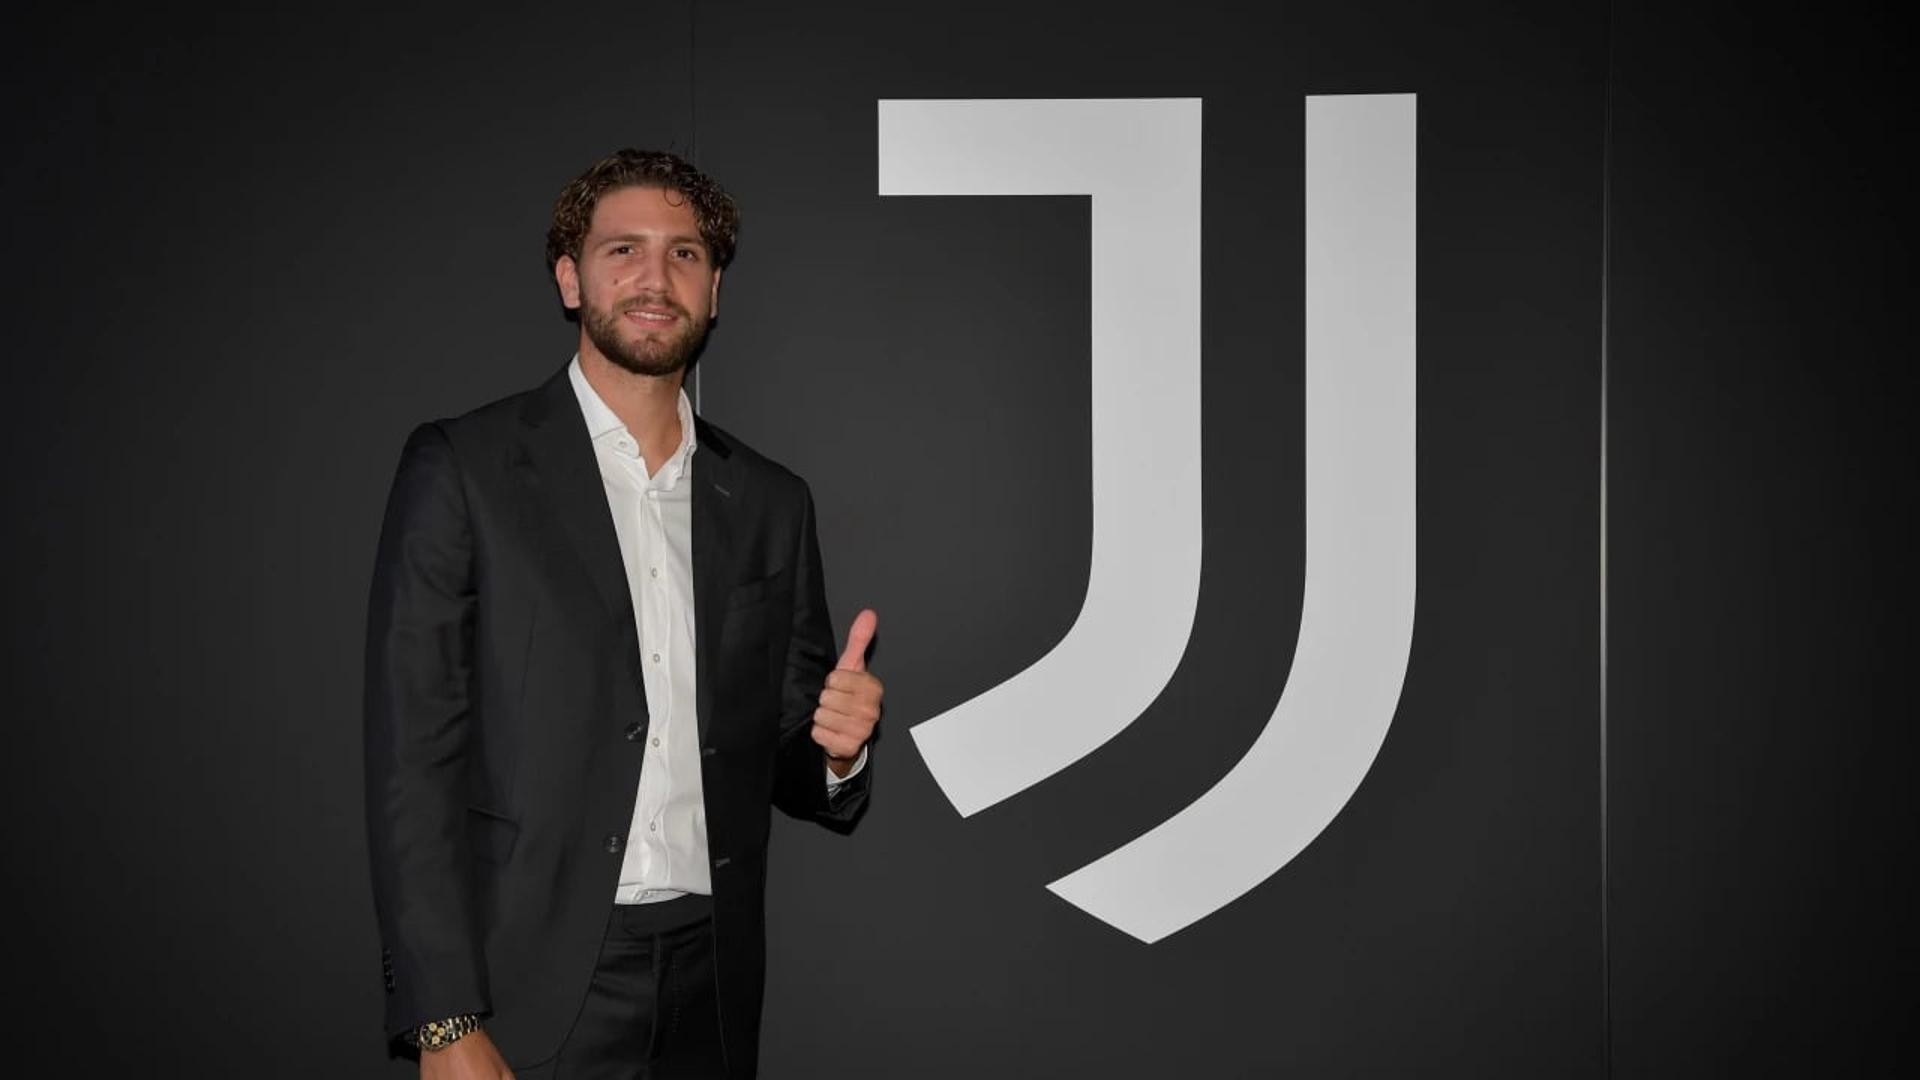 Manuel Locatelli - Juventus